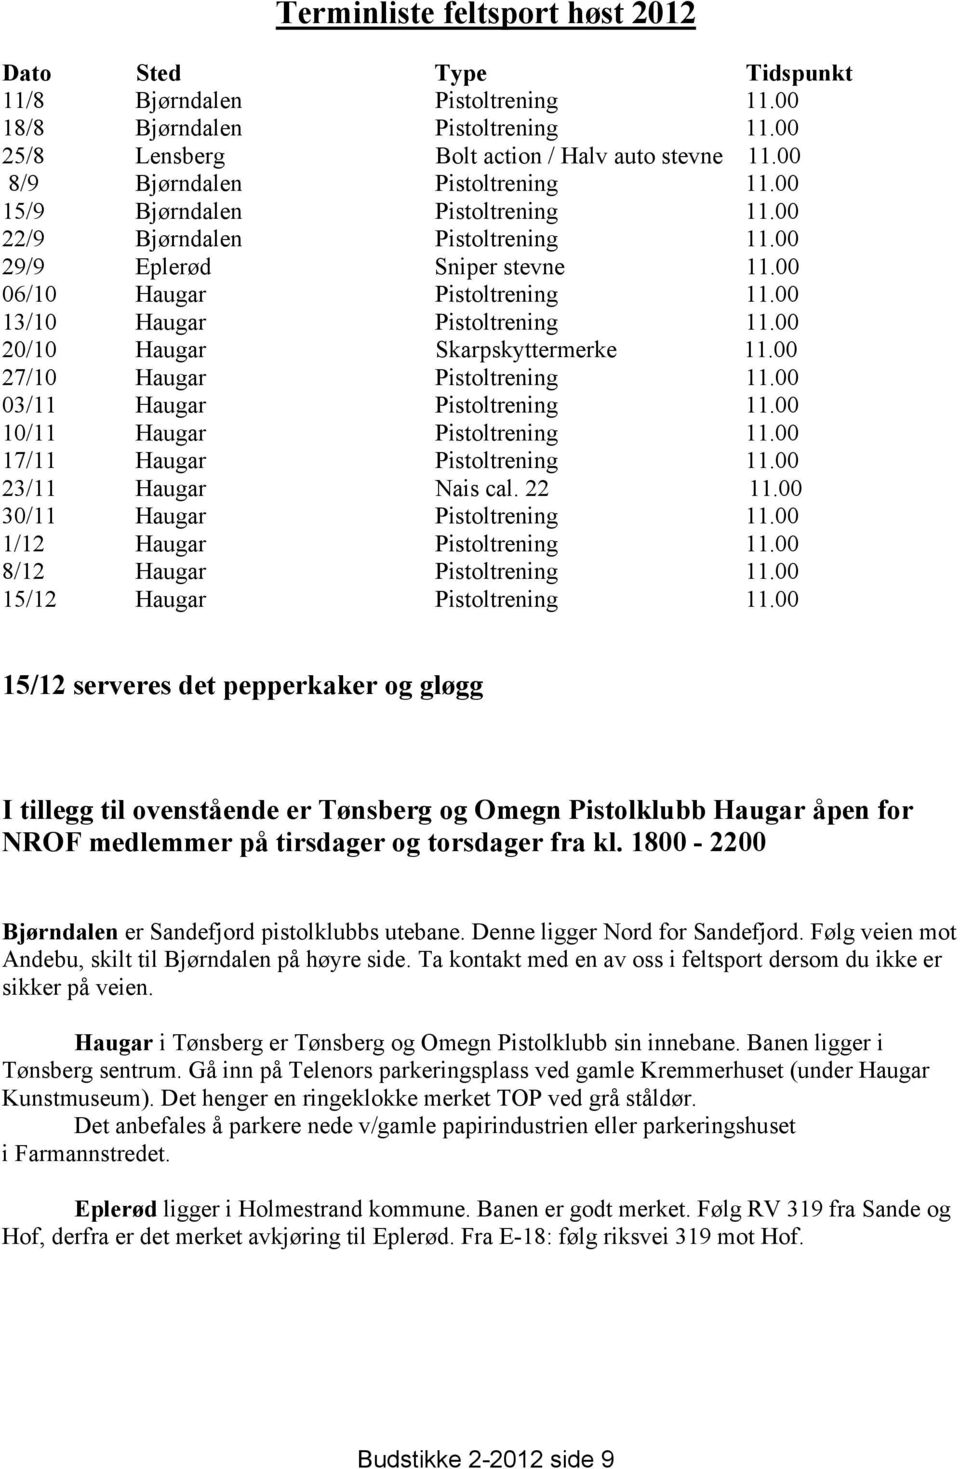 00 13/10 Haugar Pistoltrening 11.00 20/10 Haugar Skarpskyttermerke 11.00 27/10 Haugar Pistoltrening 11.00 03/11 Haugar Pistoltrening 11.00 10/11 Haugar Pistoltrening 11.